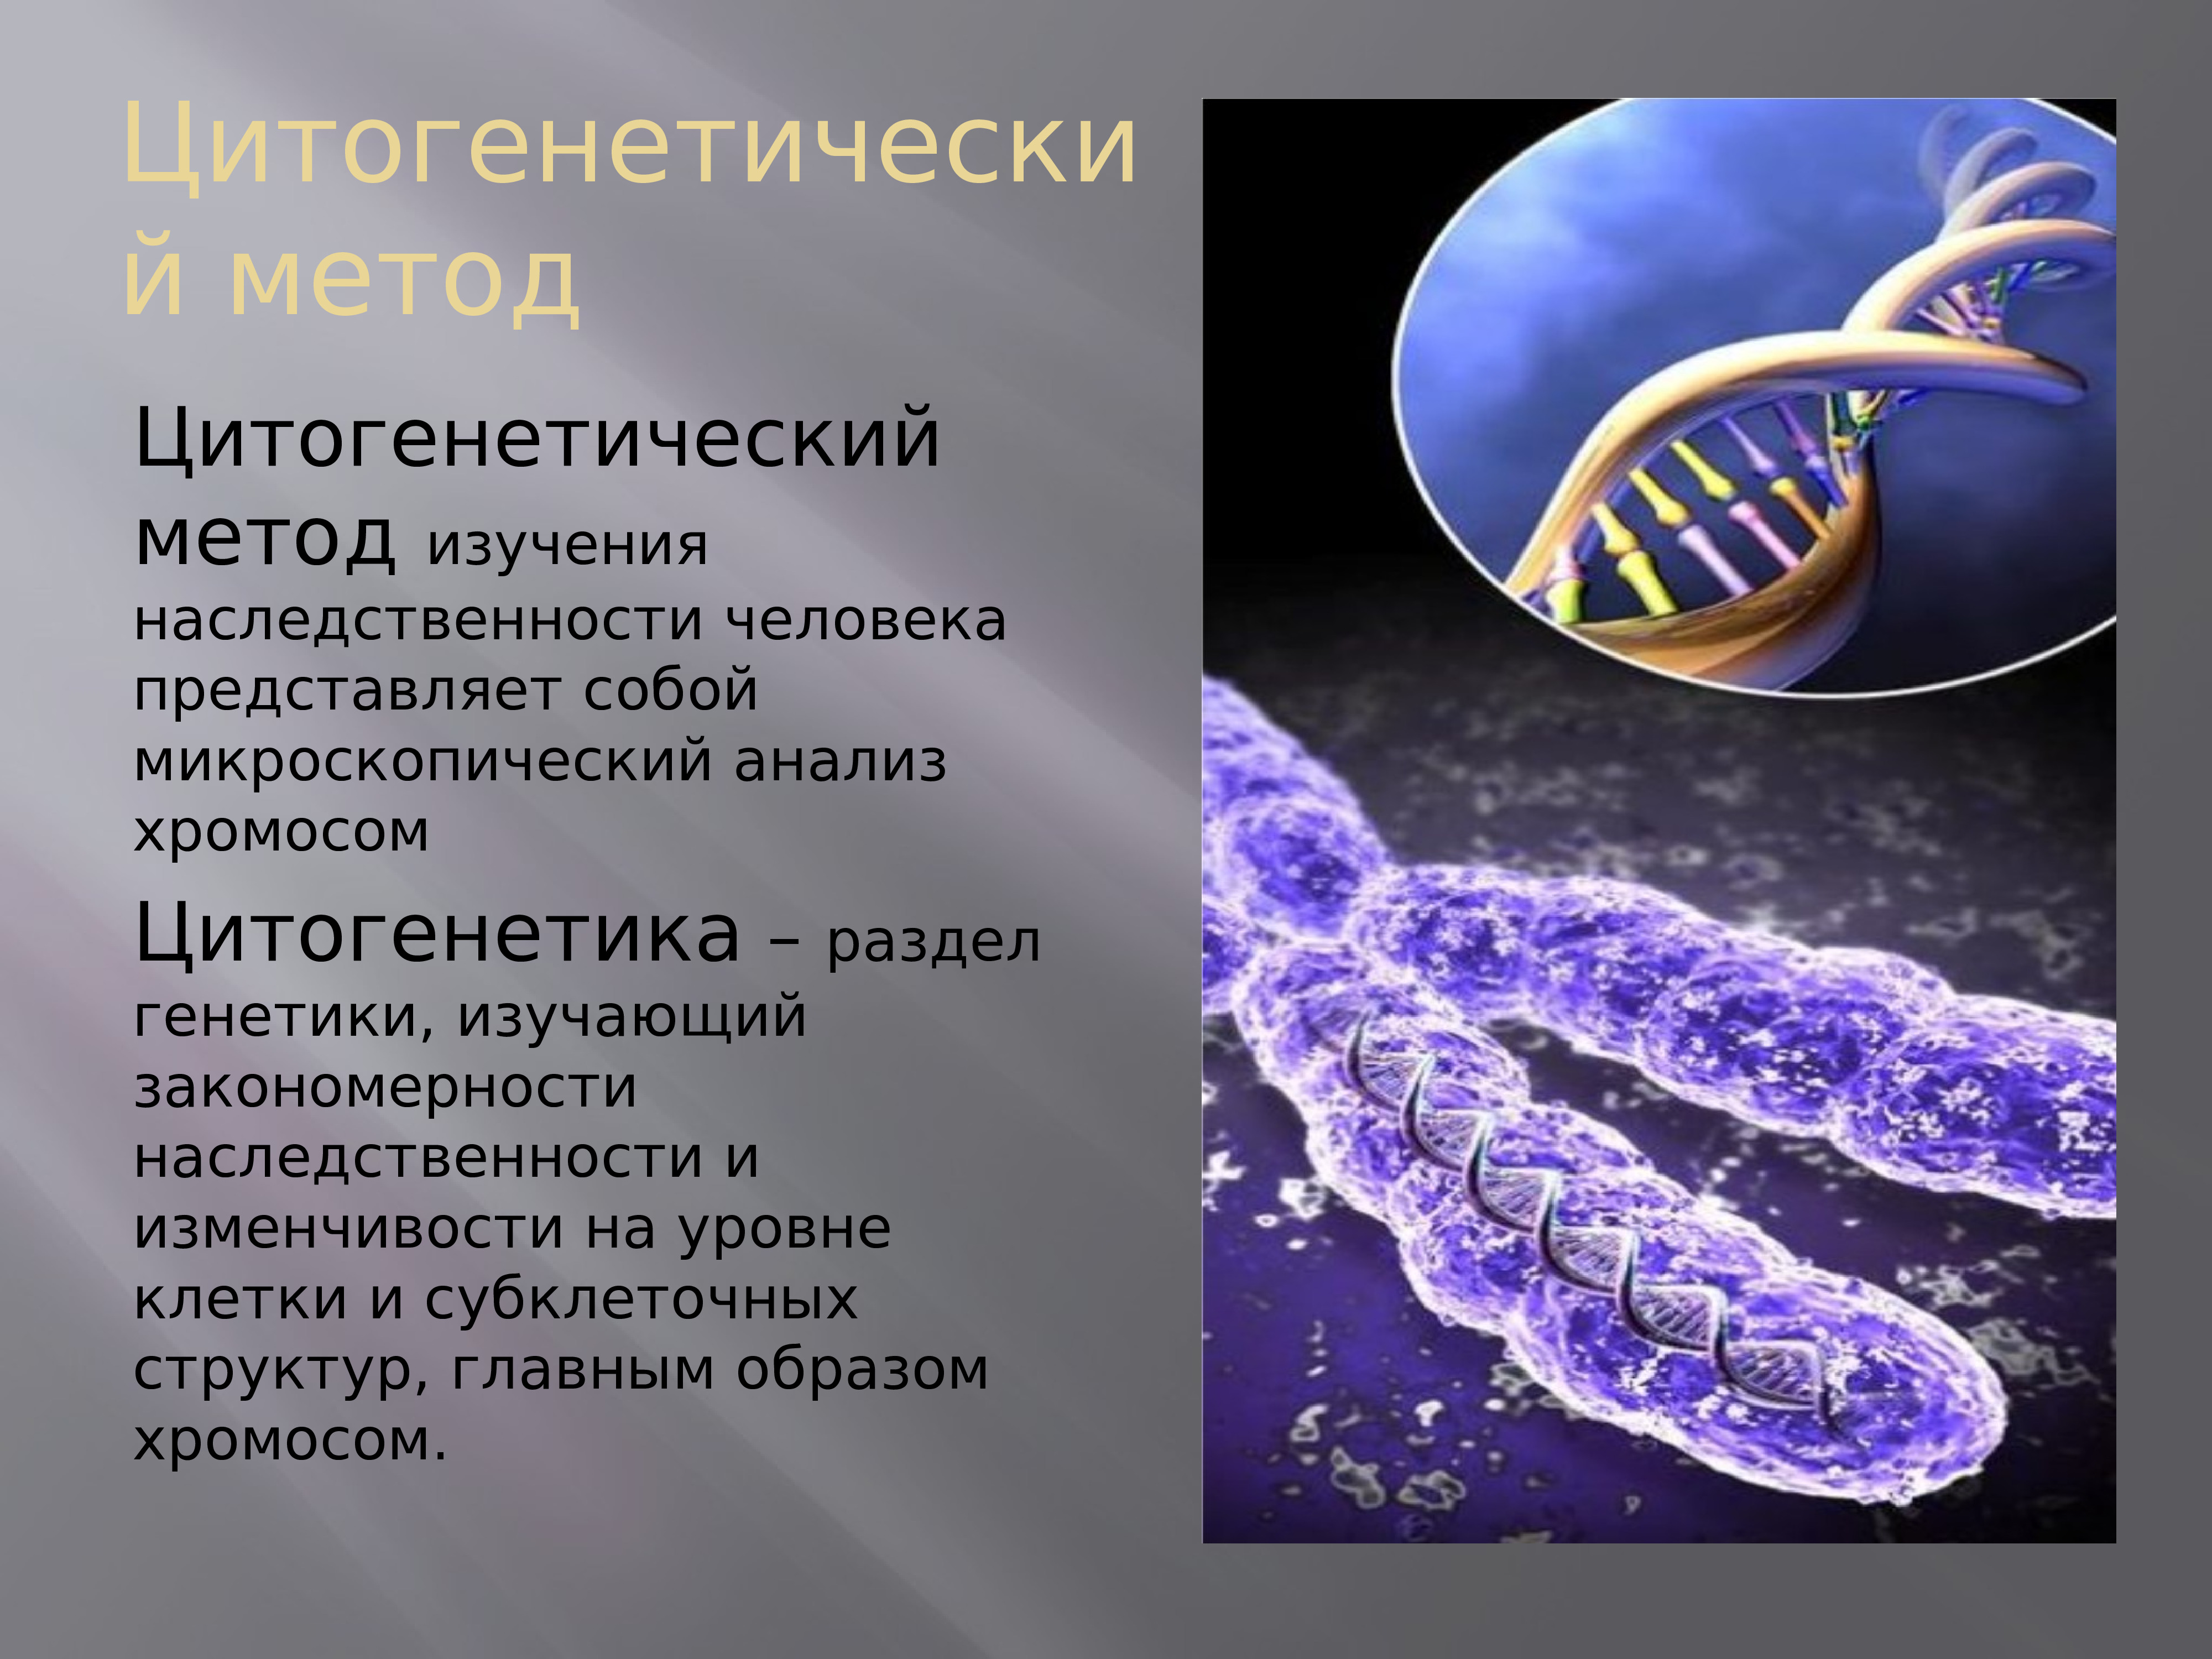 Наследственный материал хромосомы. Цитогенетический метод исследования генетики. Генетика человека цитогенетический метод. Цитогенетический метод изучения наследственности. Цитогенетический метод исследования наследственности человека.